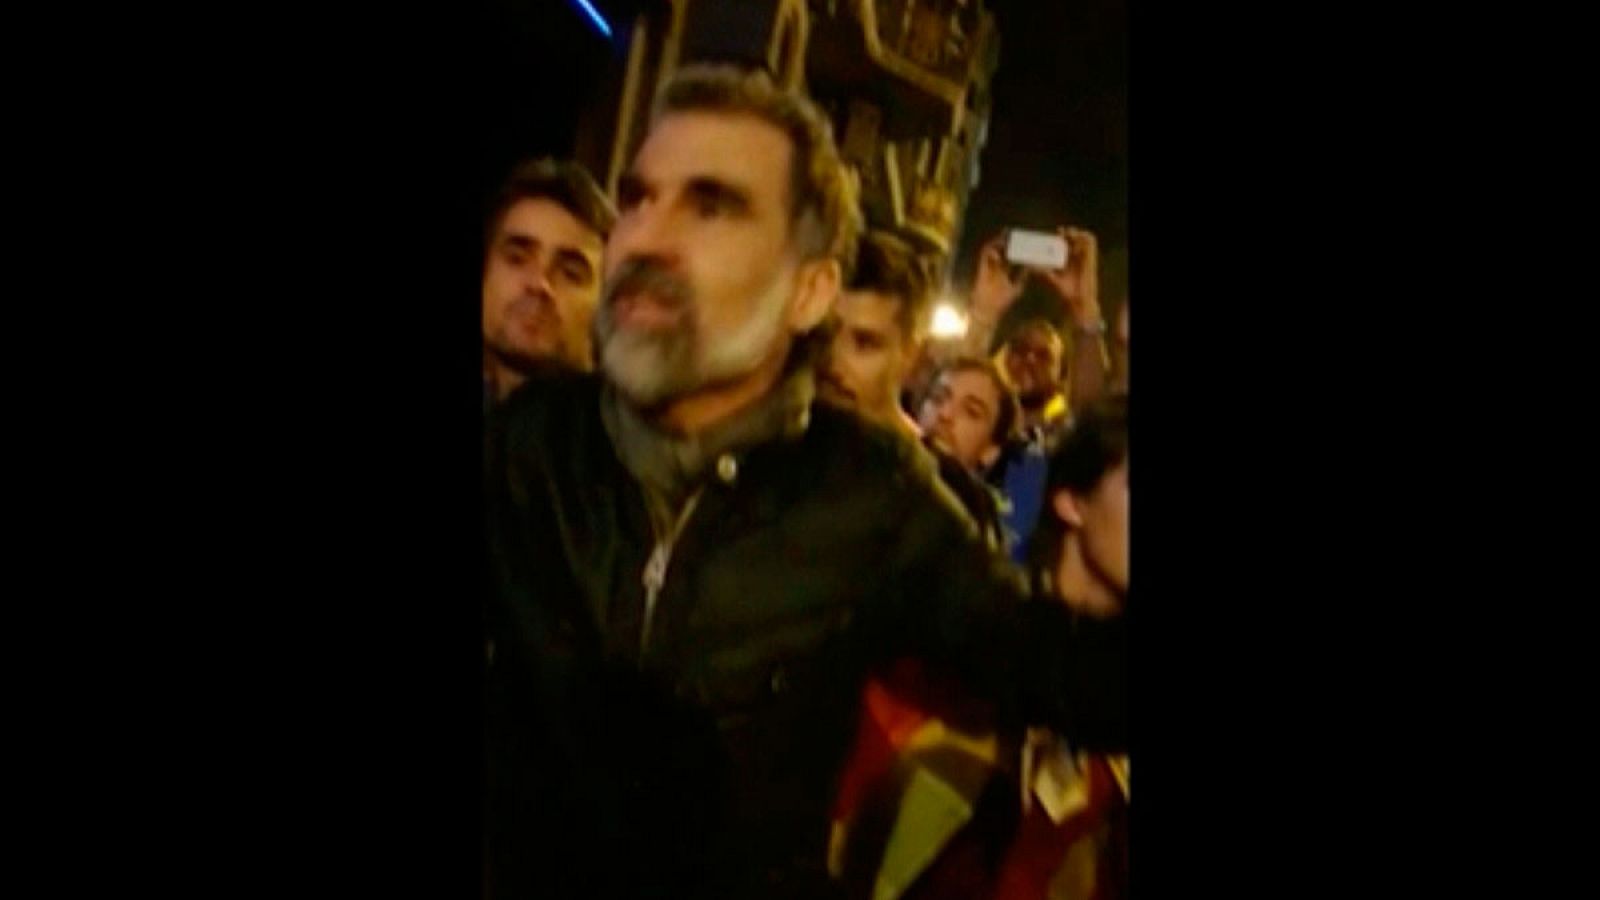 Juicio procés: Jordi Cuixart pide a la gente que se marche de la concentración ante la Conselleria de Economía el 20S